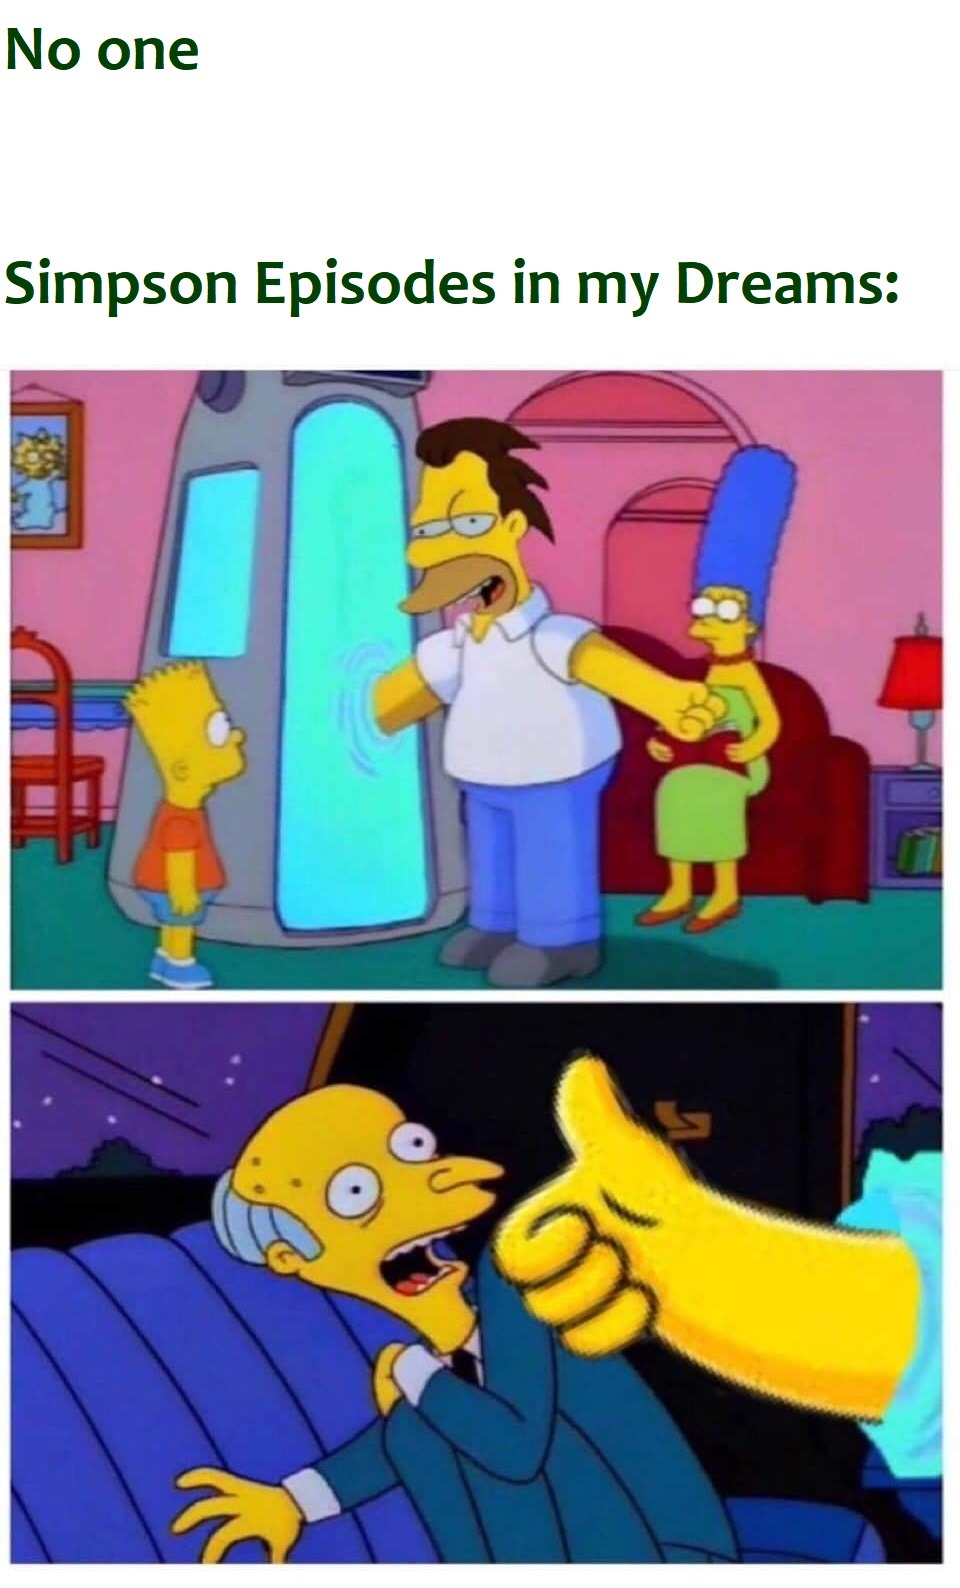 Simpson episodes vs, Simpson episodes in my dreams - meme